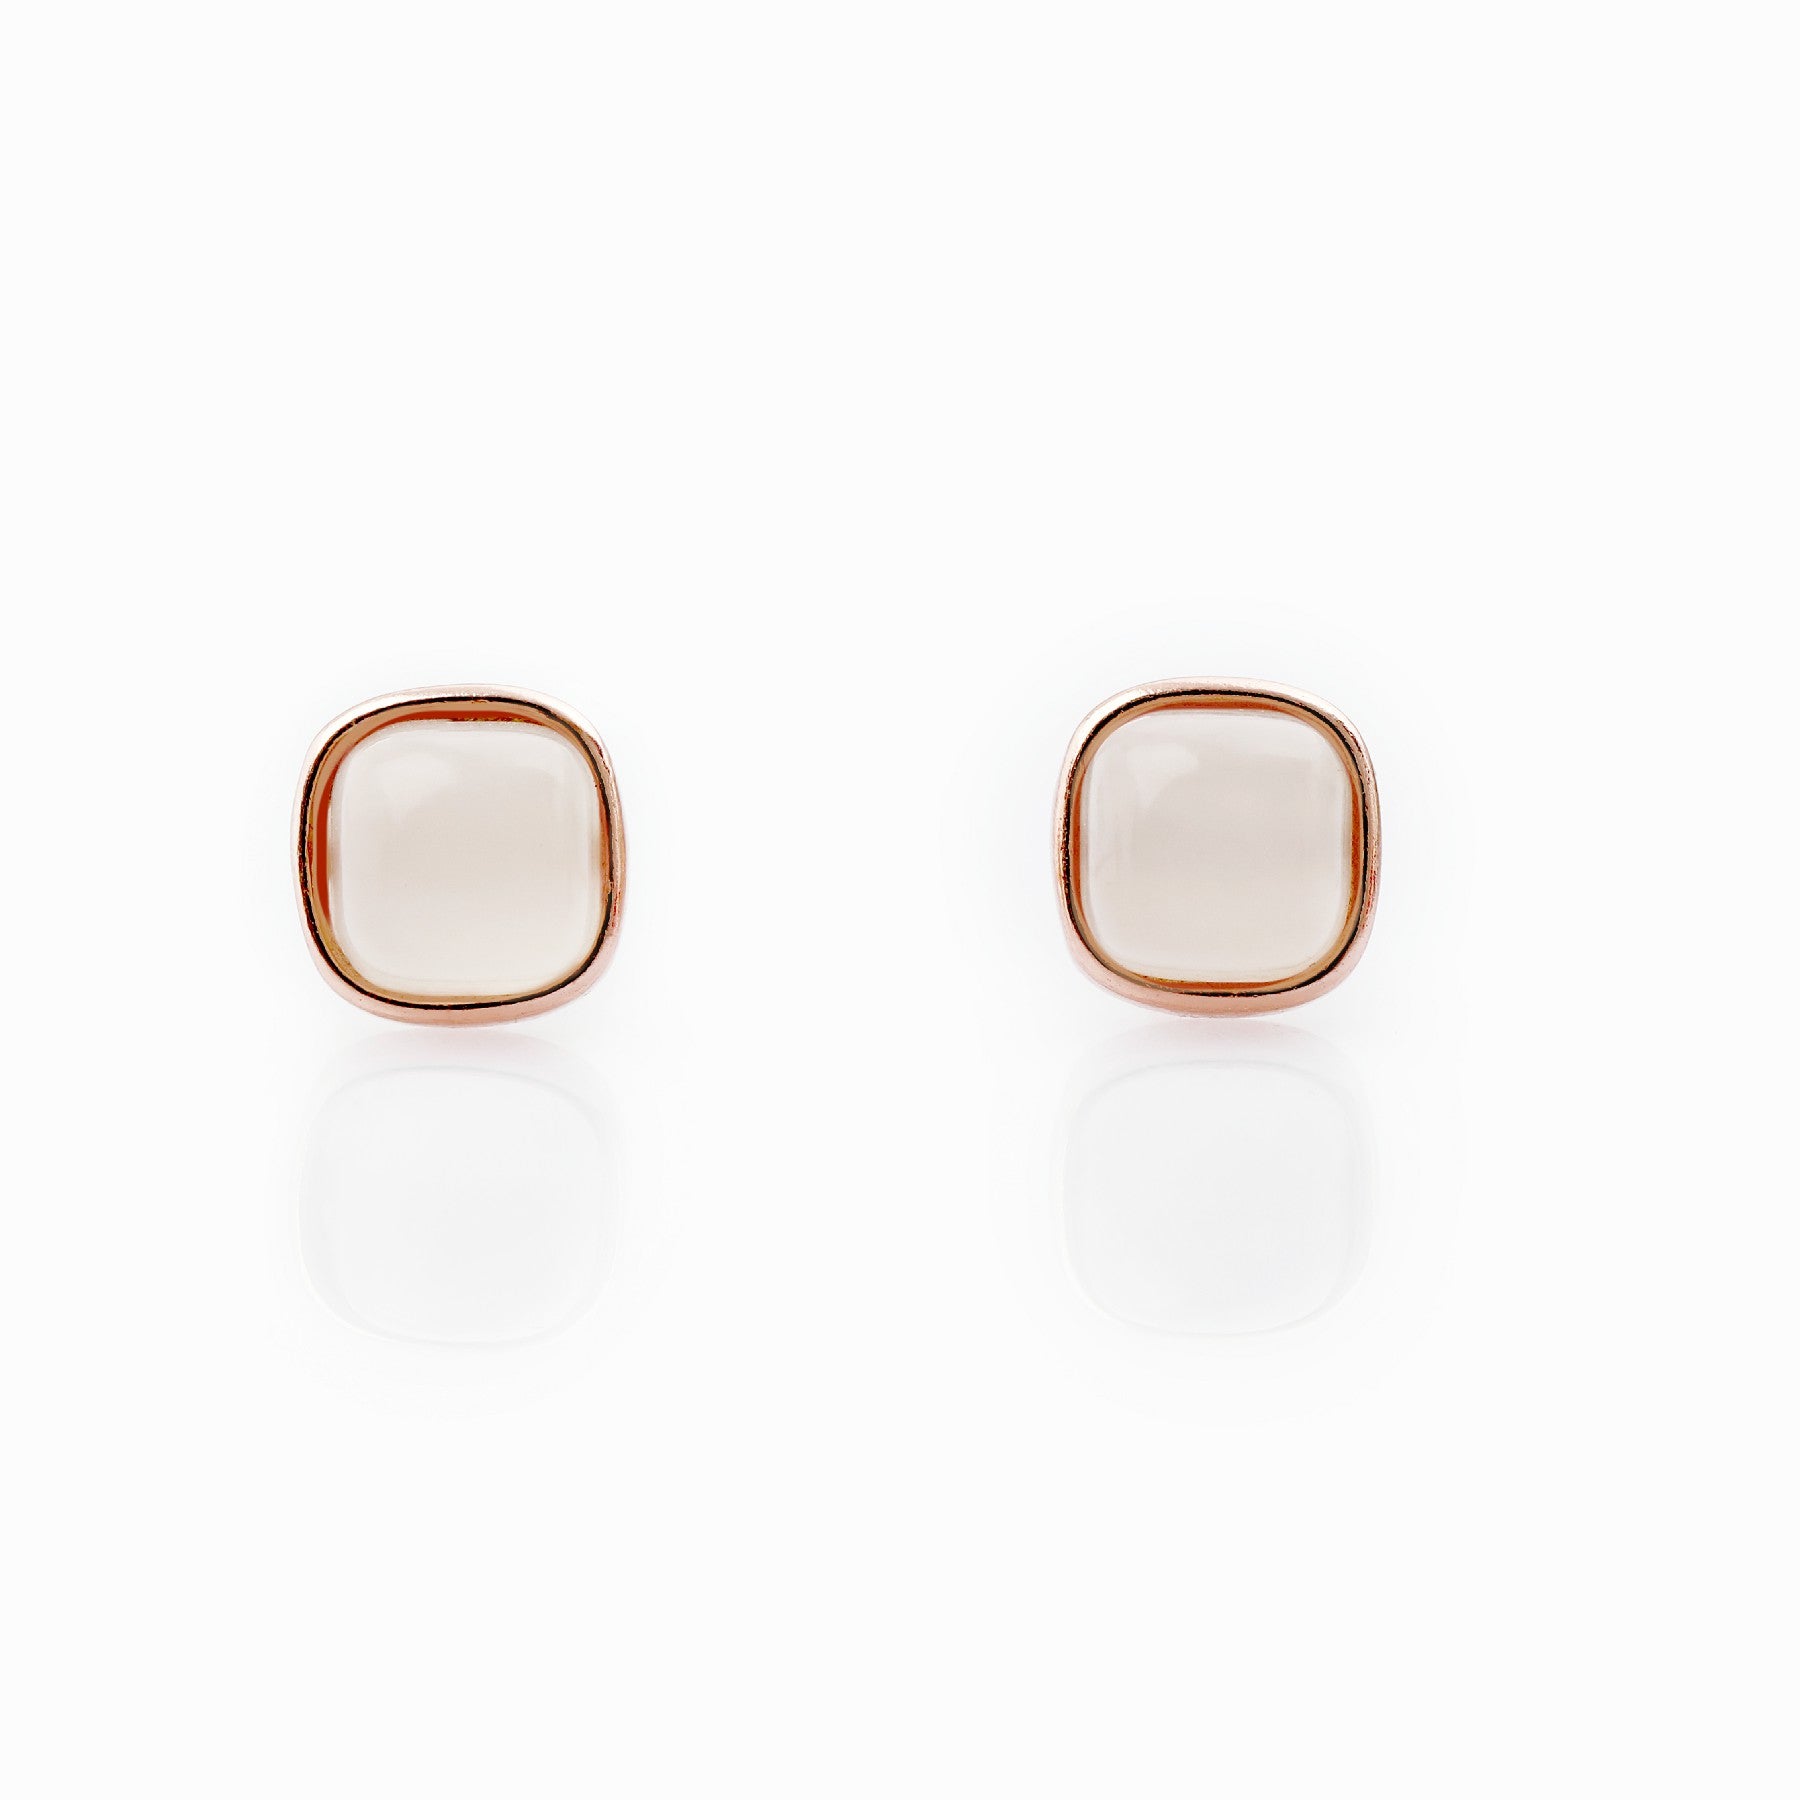 The square Hetian Jade earrings